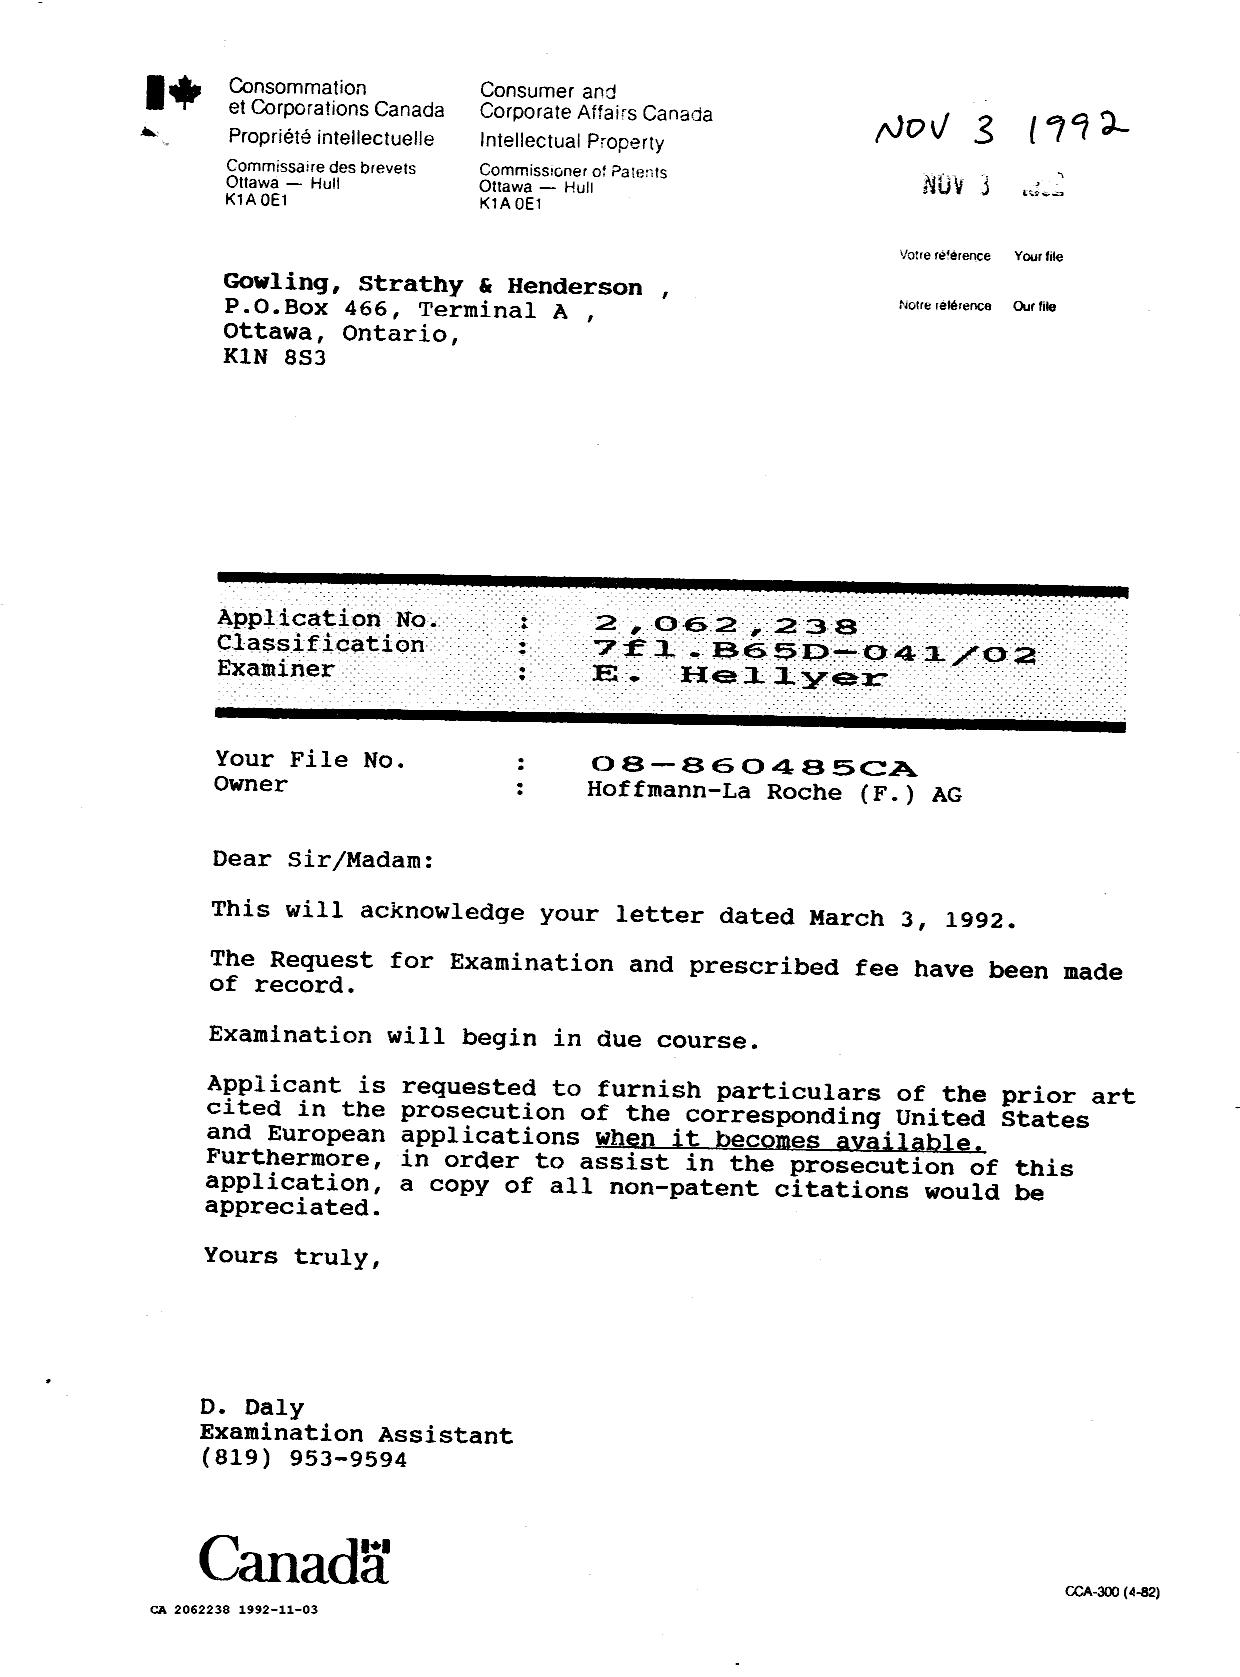 Document de brevet canadien 2062238. Correspondance 19911203. Image 1 de 1